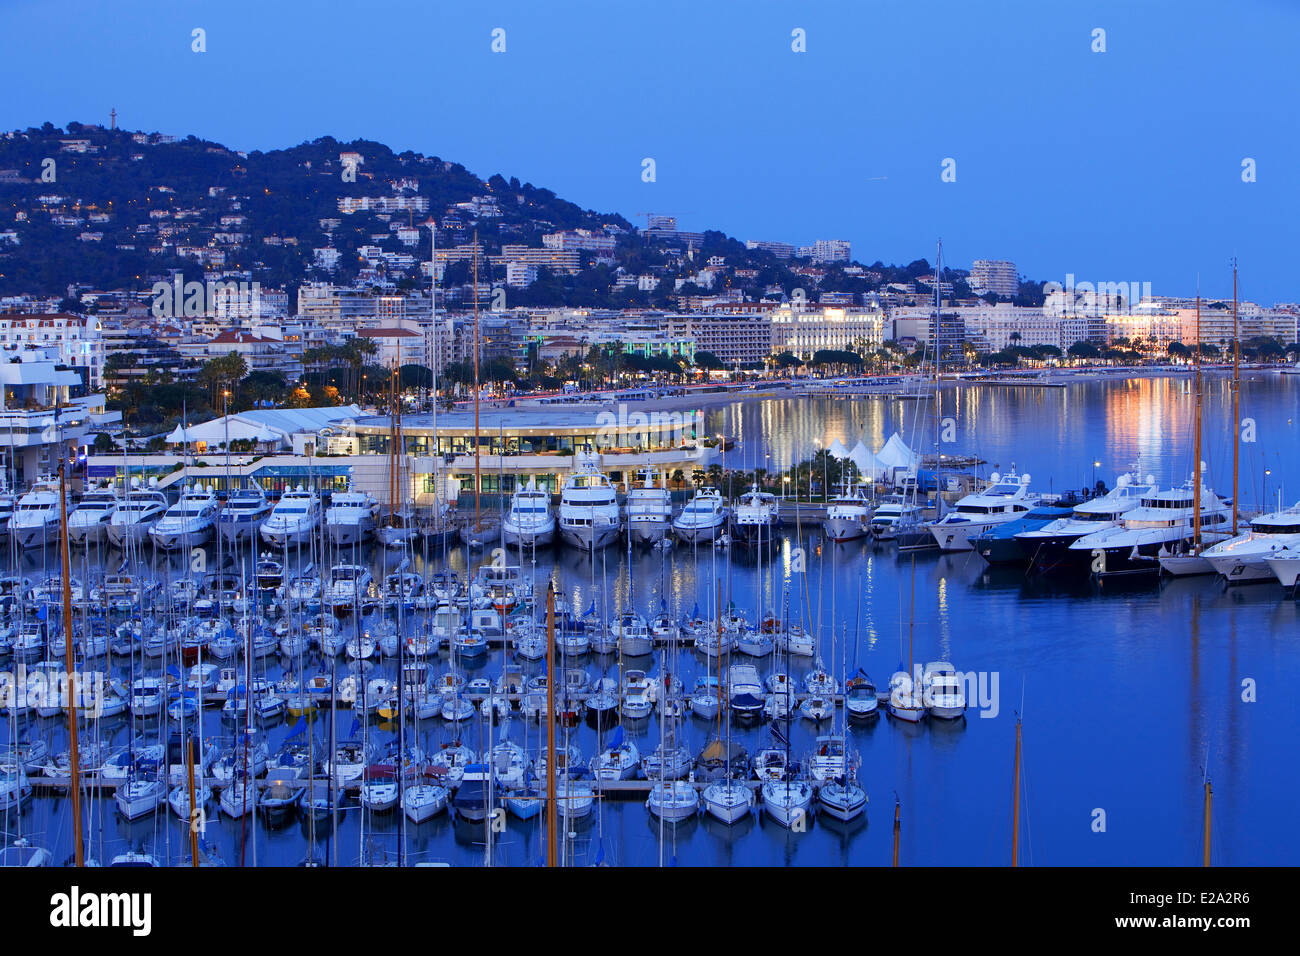 France, Alpes Maritimes, Cannes, old harbour, the Palais des Festivals, in the background the Boulevard de La Croisette Stock Photo